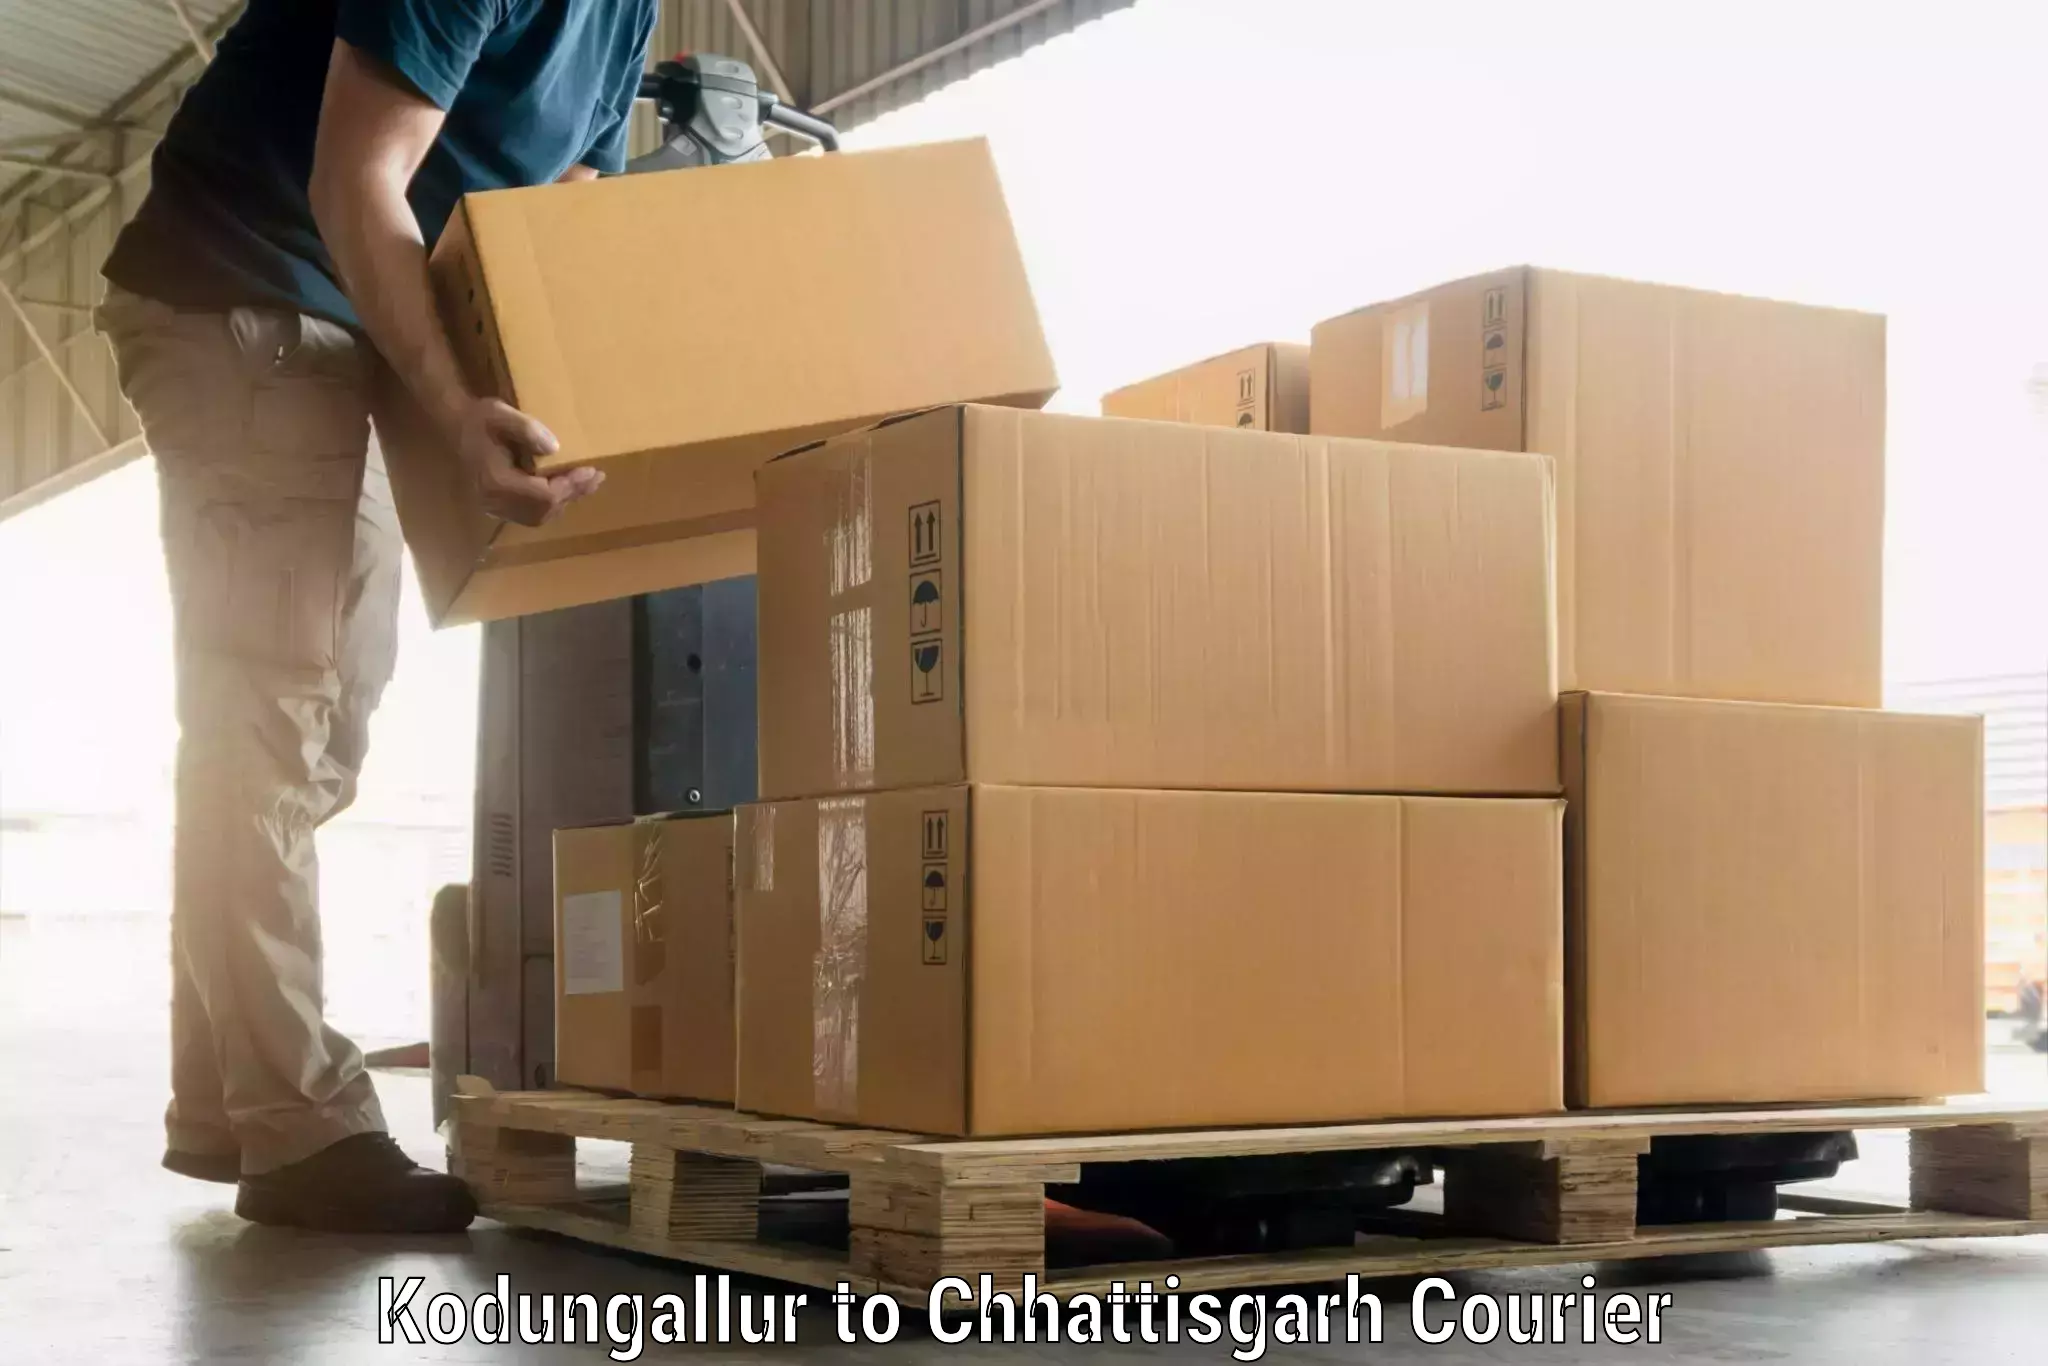 Luggage transport service Kodungallur to Pandariya